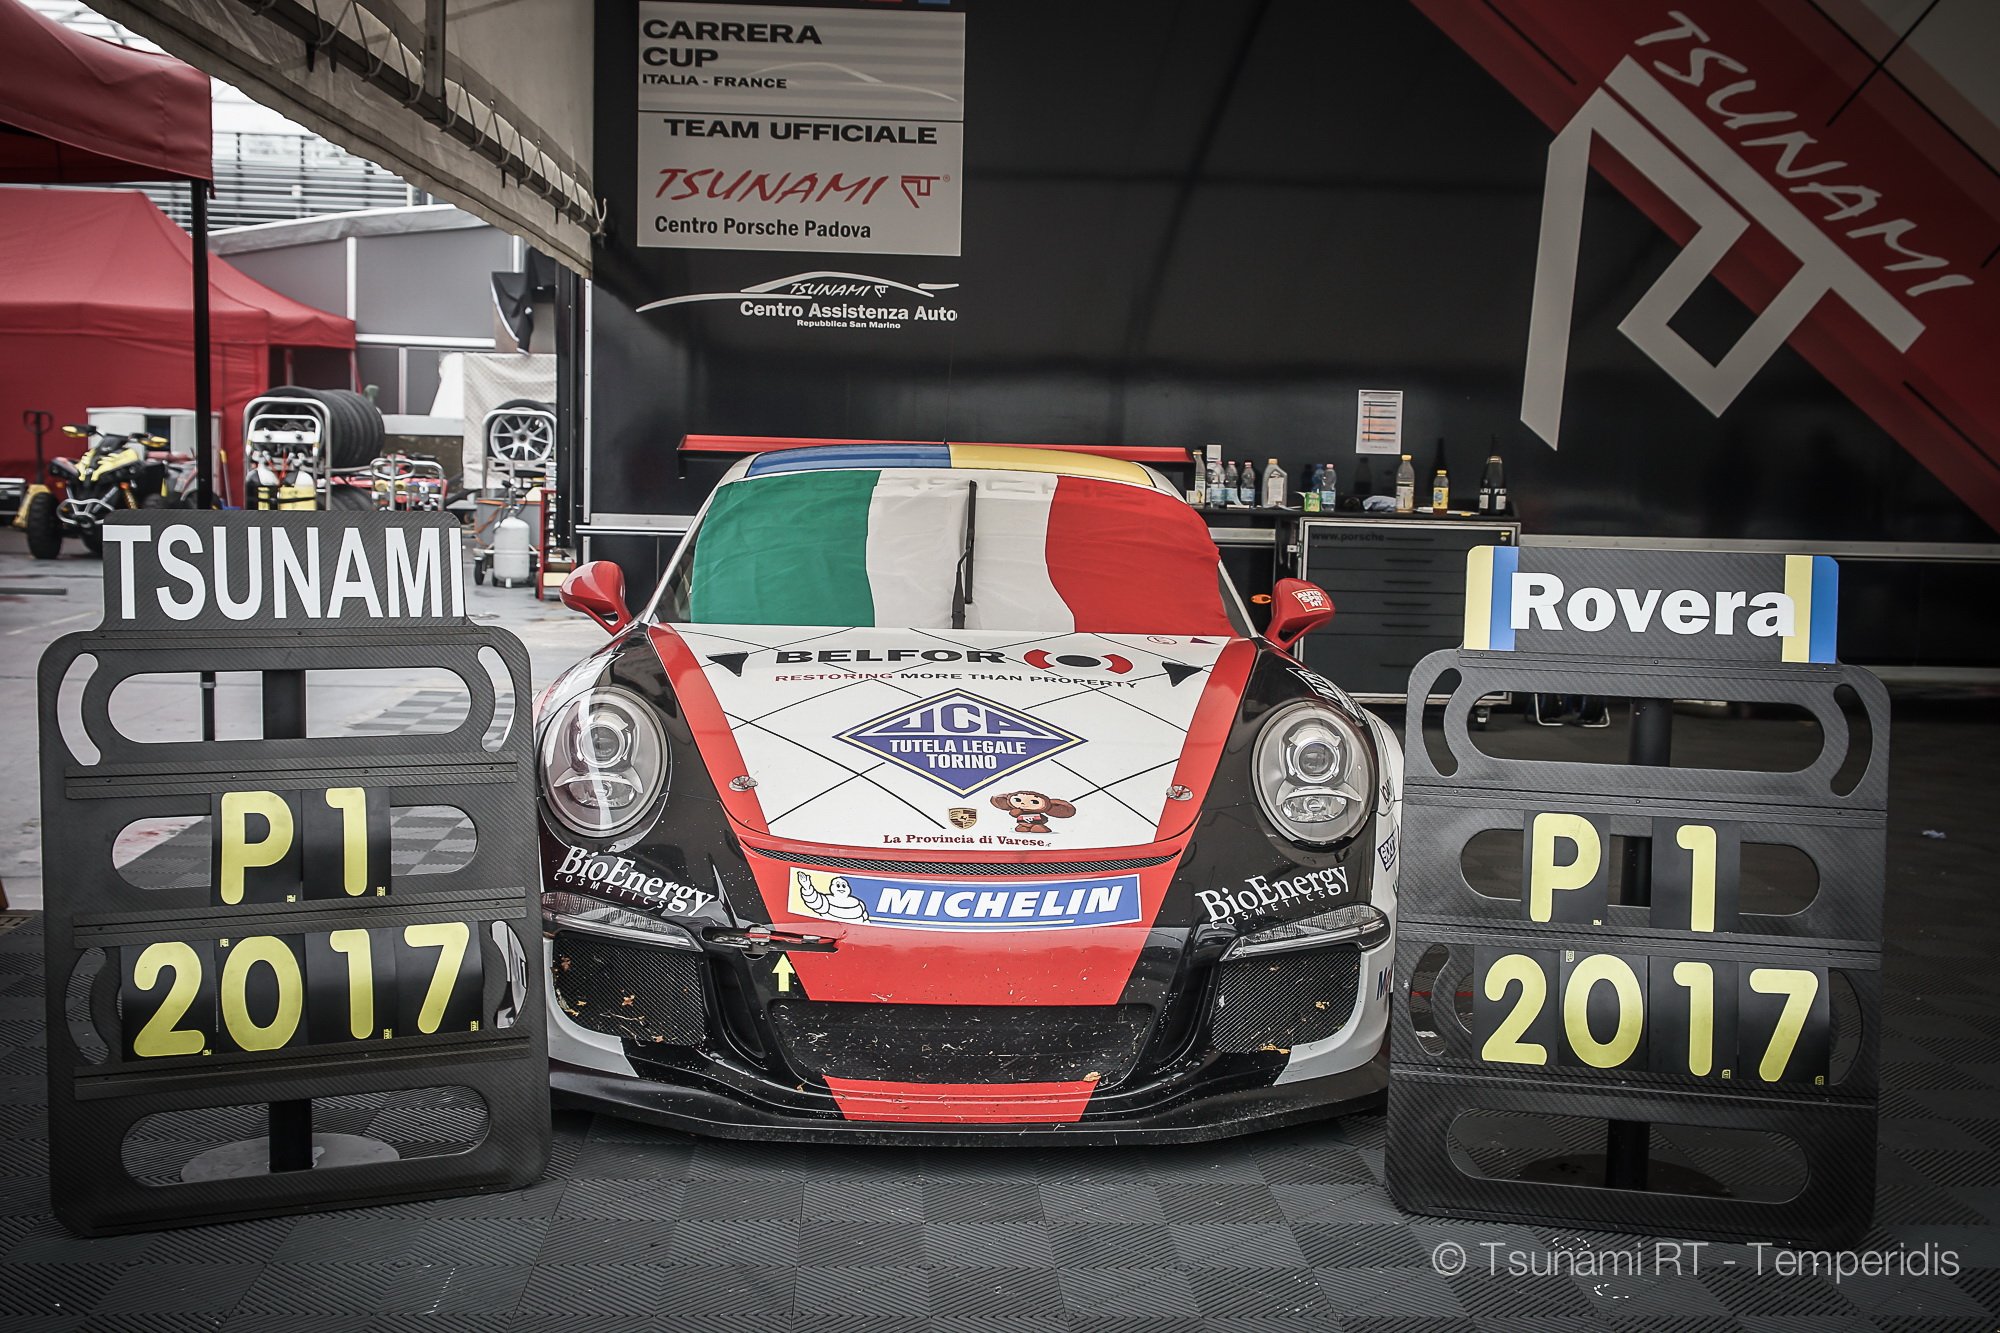 More information about "Intervista ad Alessio Rovera: Campione 2017 Porsche Carrera Cup Italia"